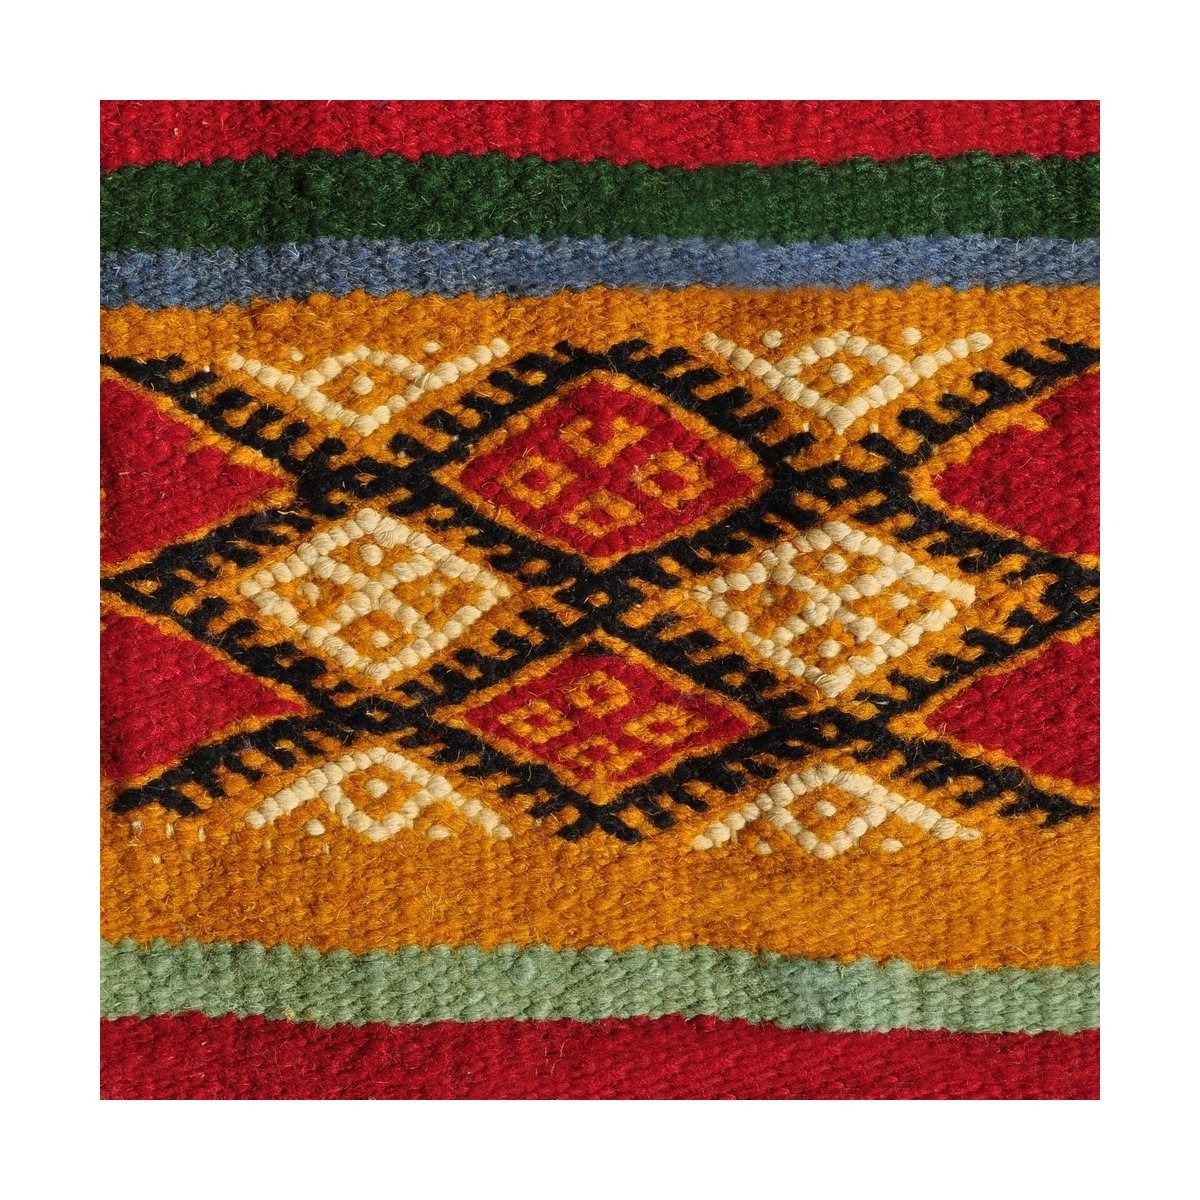 Berber tapijt Tapijt Kilim Ouarzazate 125x245 Geel/Veelkleurig (Handgeweven, Wol, Tunesië) Tunesisch kilimdeken, Marokkaanse sti